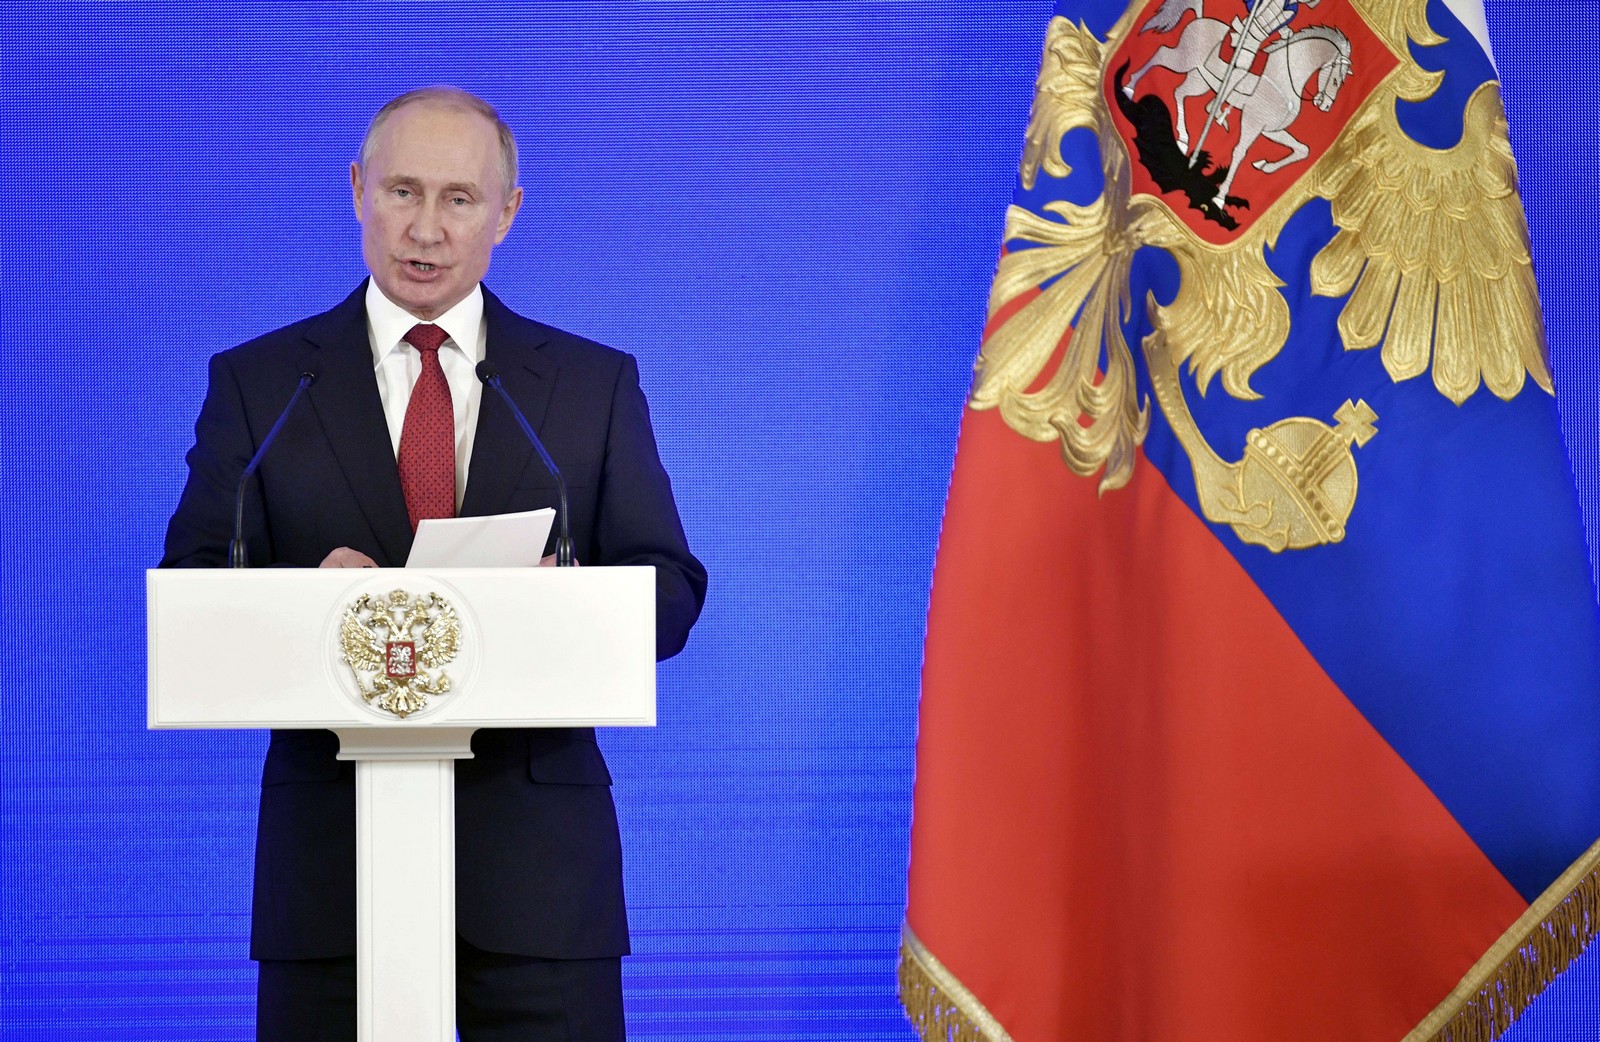 Discours du Président de la Russie lors du jour de l'Unité nationale à Moscou le 4 novembre 2018,
Auteurs  : Alexander Nemenov/AP/SIPA,
Numéro de reportage  : AP22266610_000002.